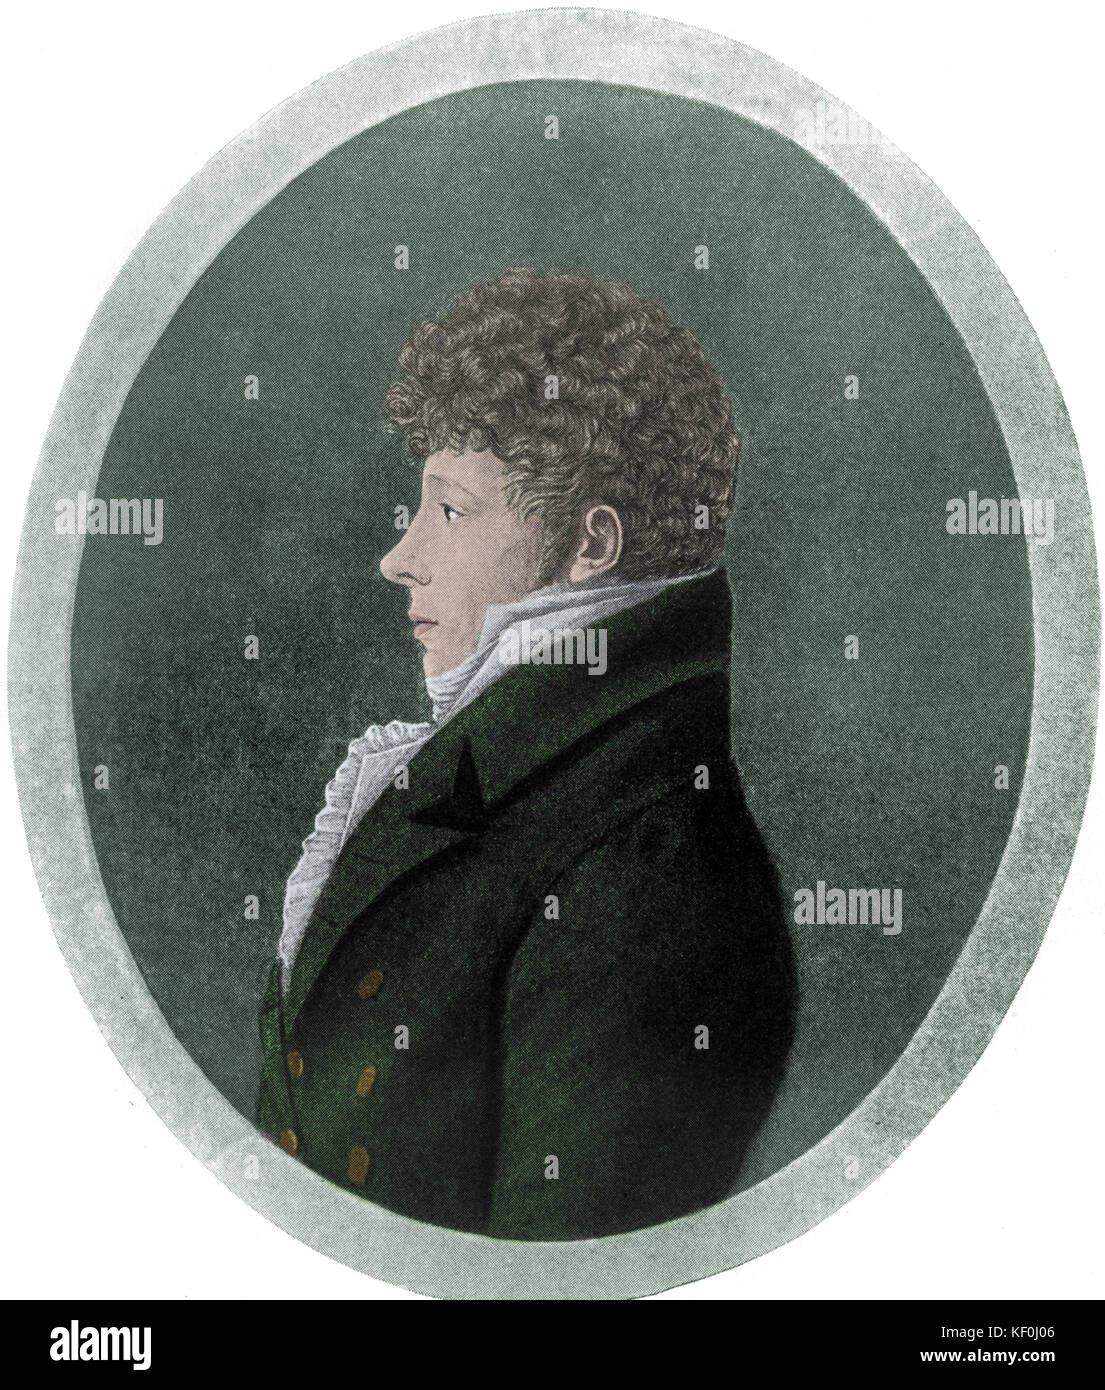 CHERUBINI, Luigi italienischer Komponist, 1760-1842. Eingefärbte Version. Stockfoto